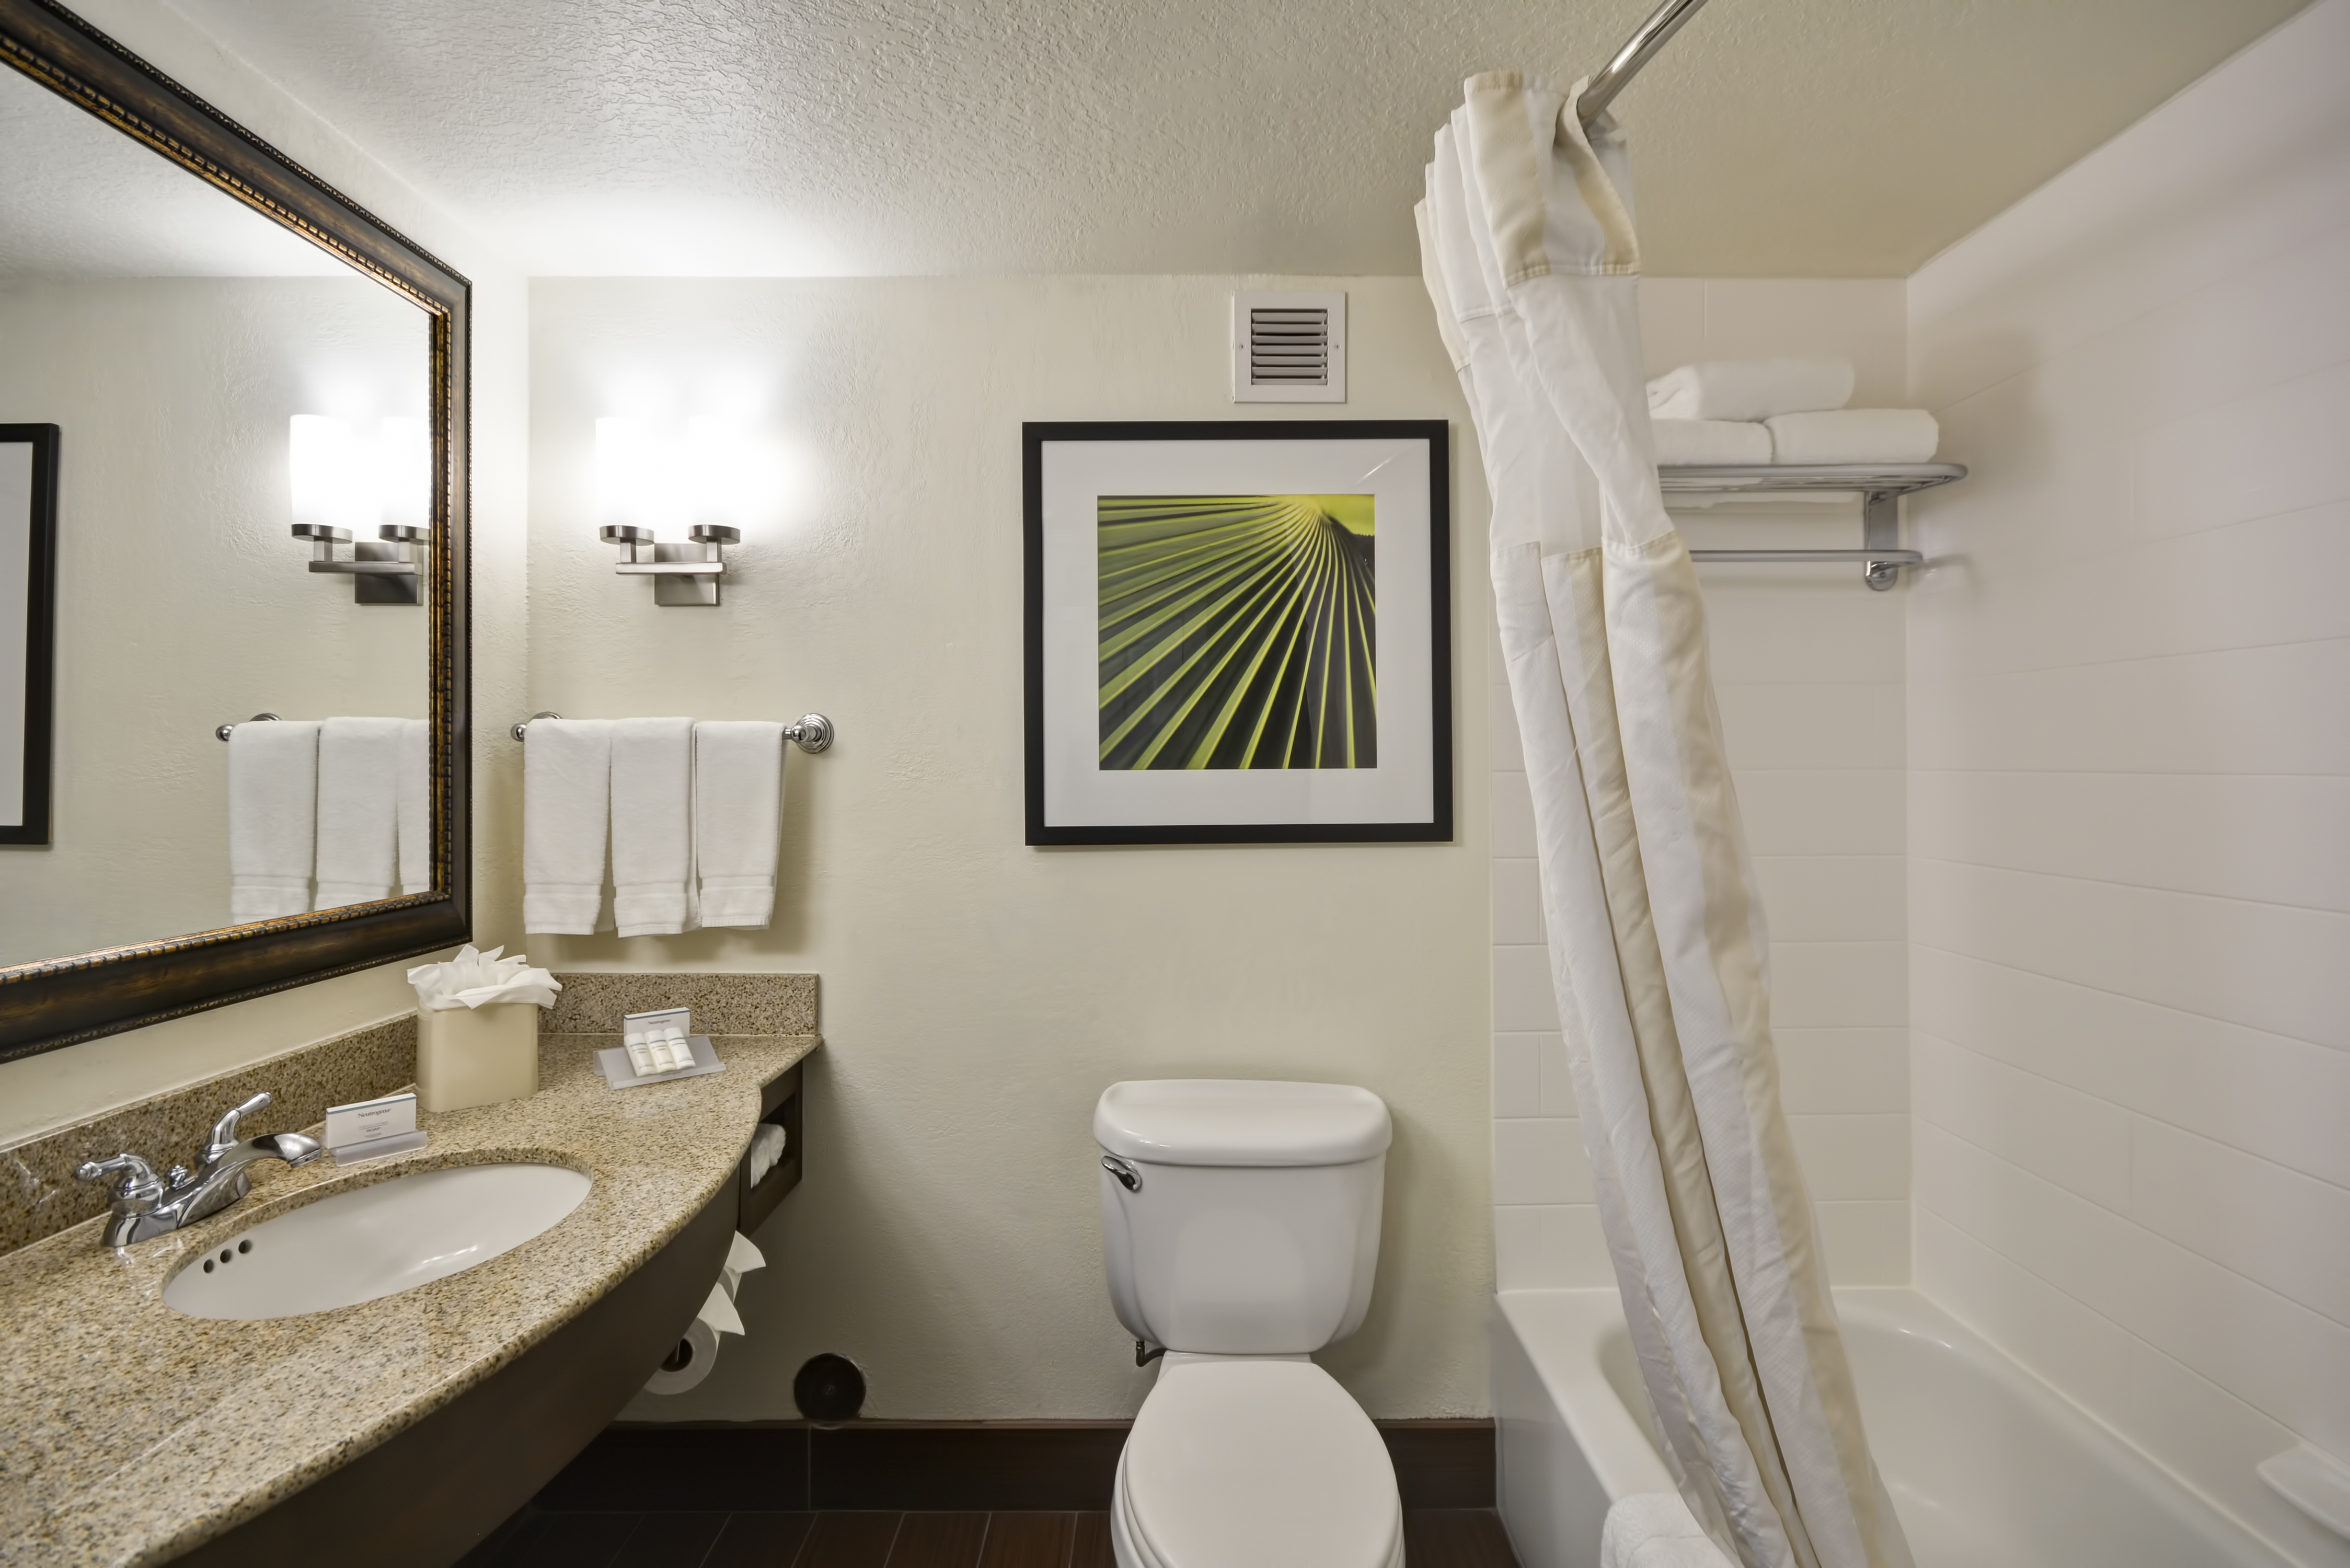 Large Vanity Mirror, Sink, Towels, Toiletries, Wall Art Above Toilet, and Tub in Standard Bathroom